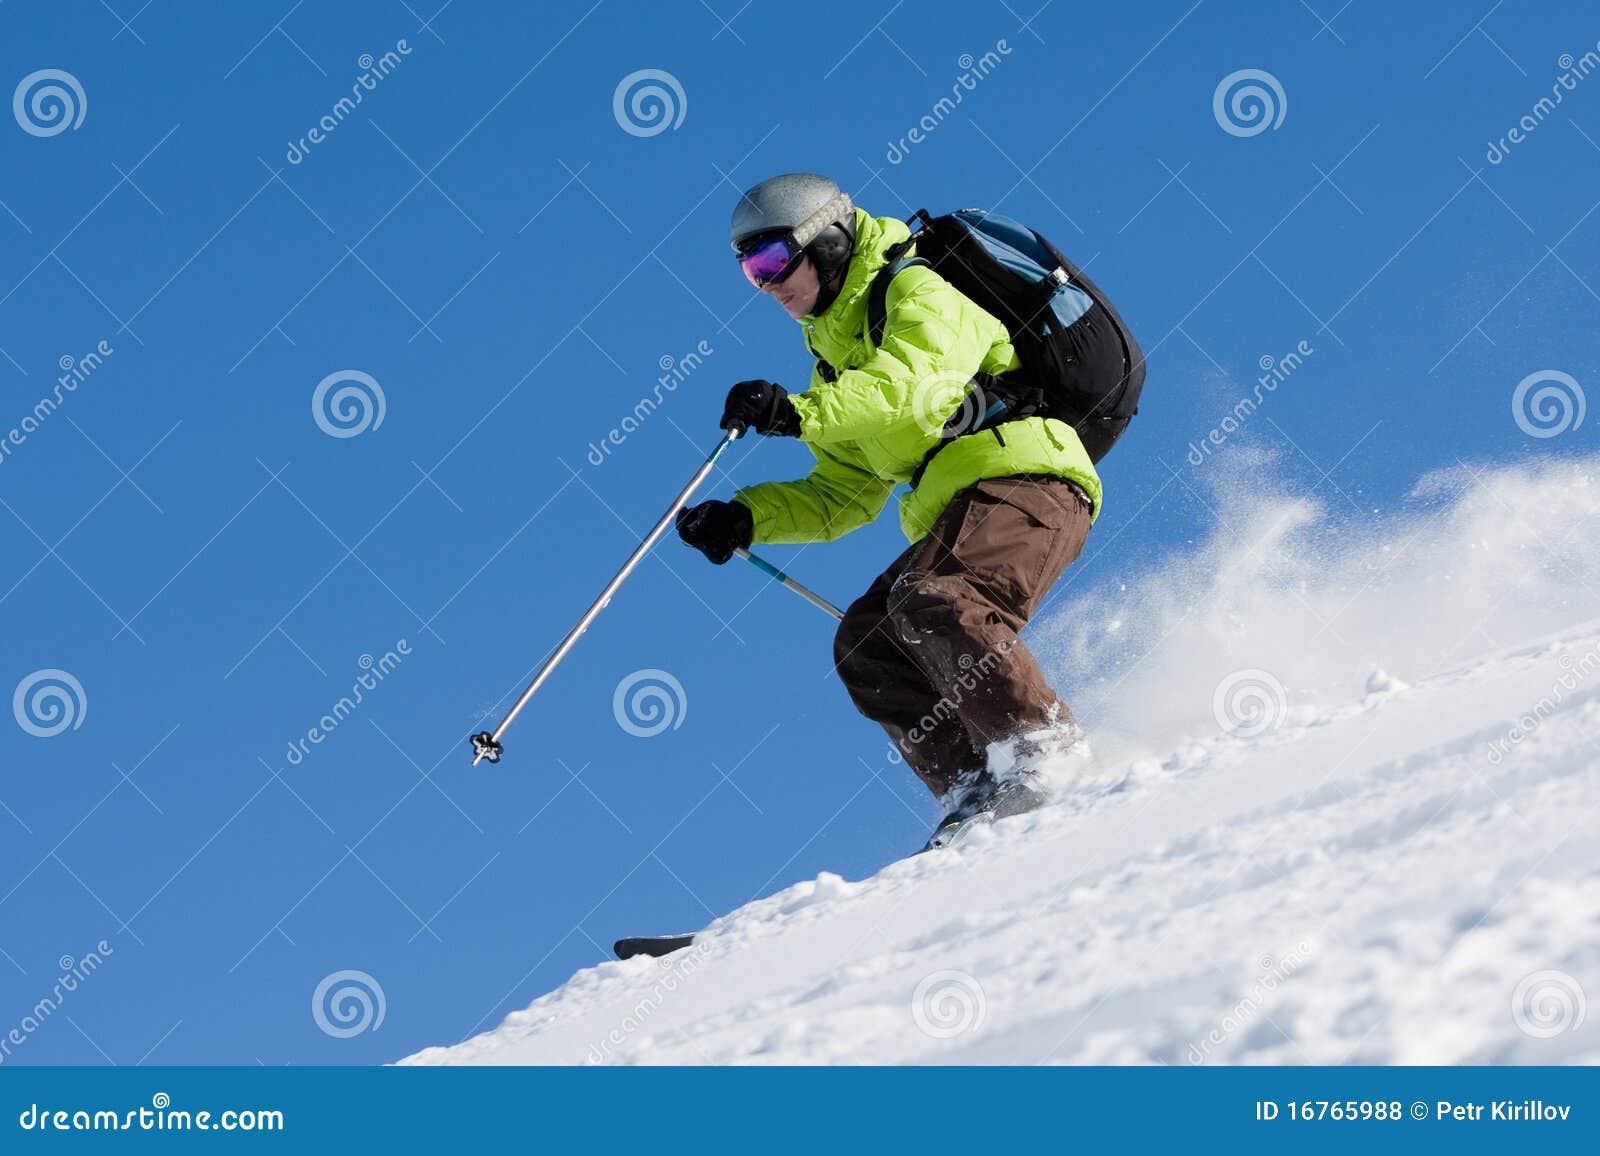 off-piste skiing (freeride)